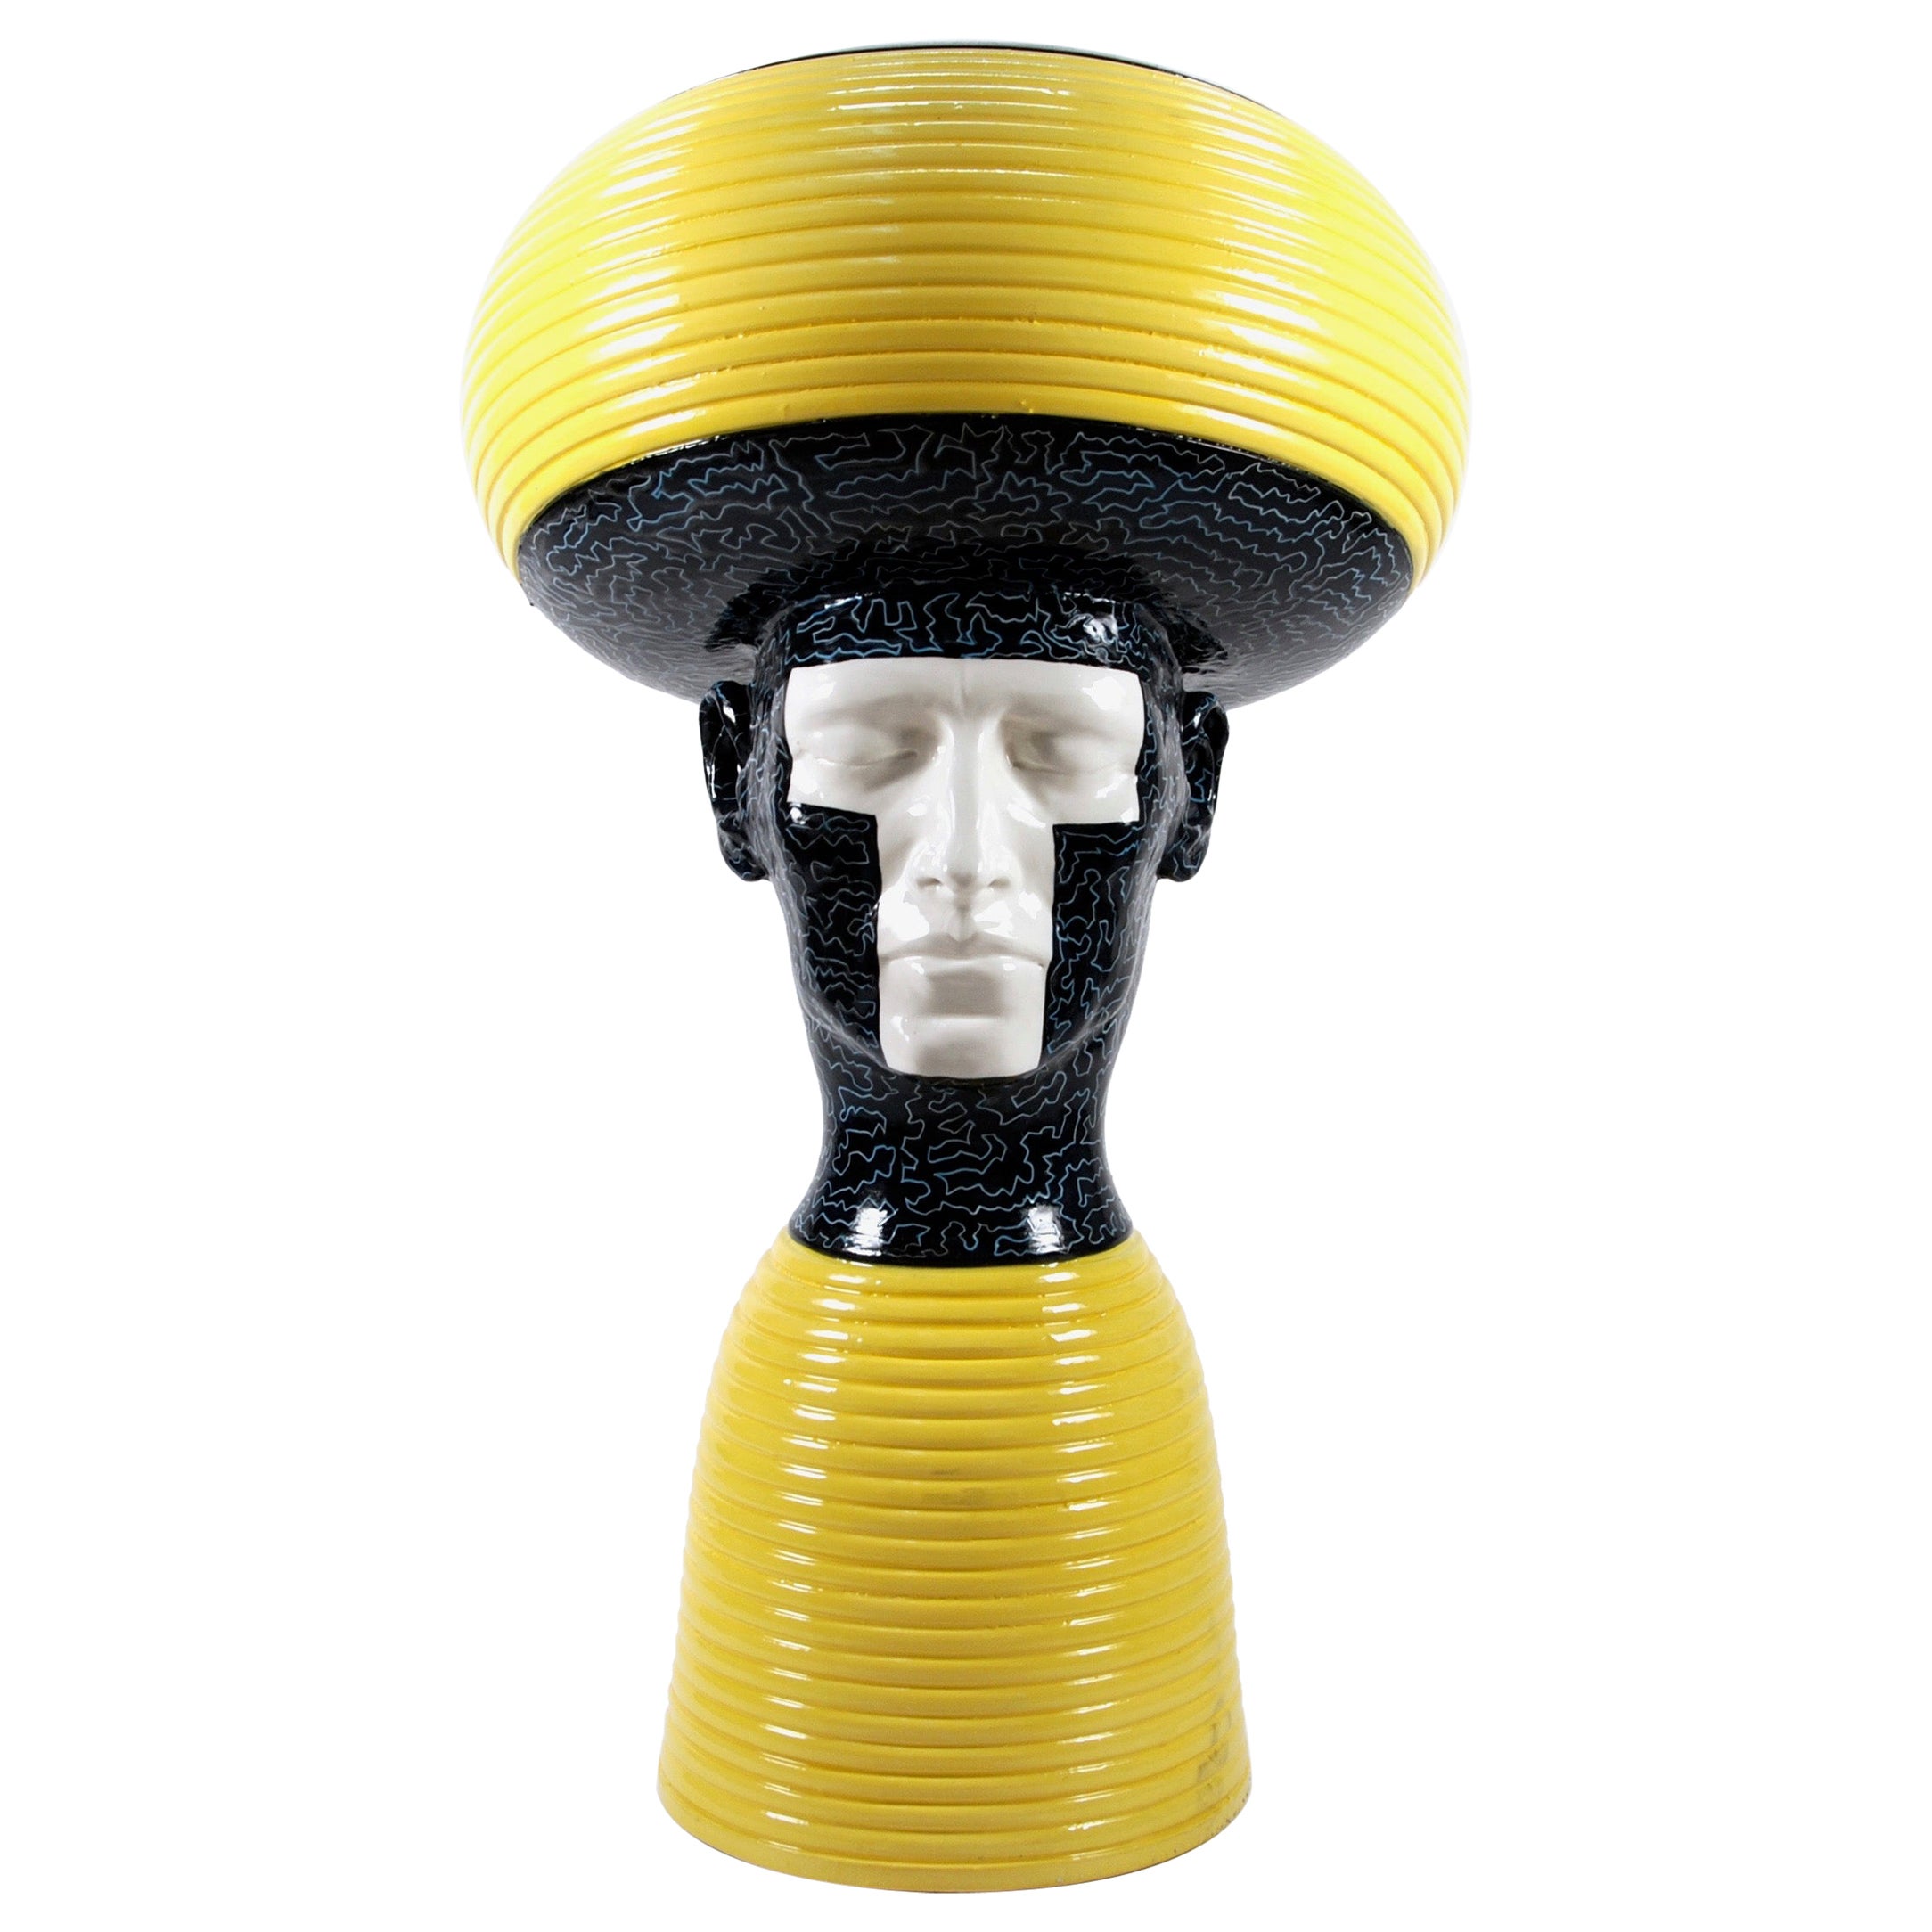 Pièce décorative en céramique jaune tête d'homme, fabriquée à la main en Italie, 2021, faite main